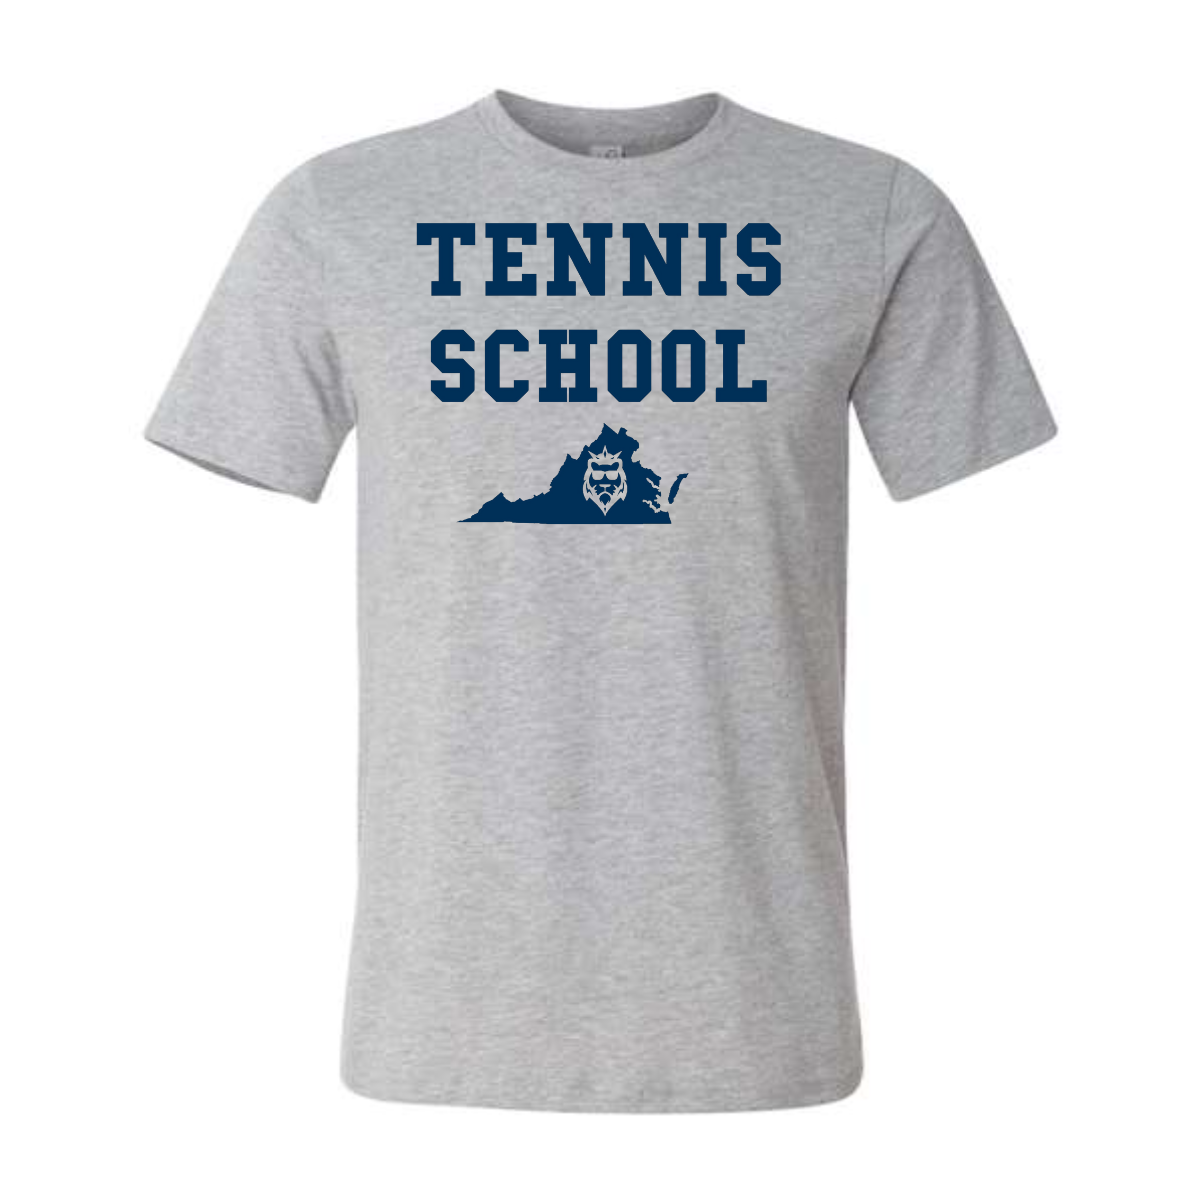 Tennis School Tee